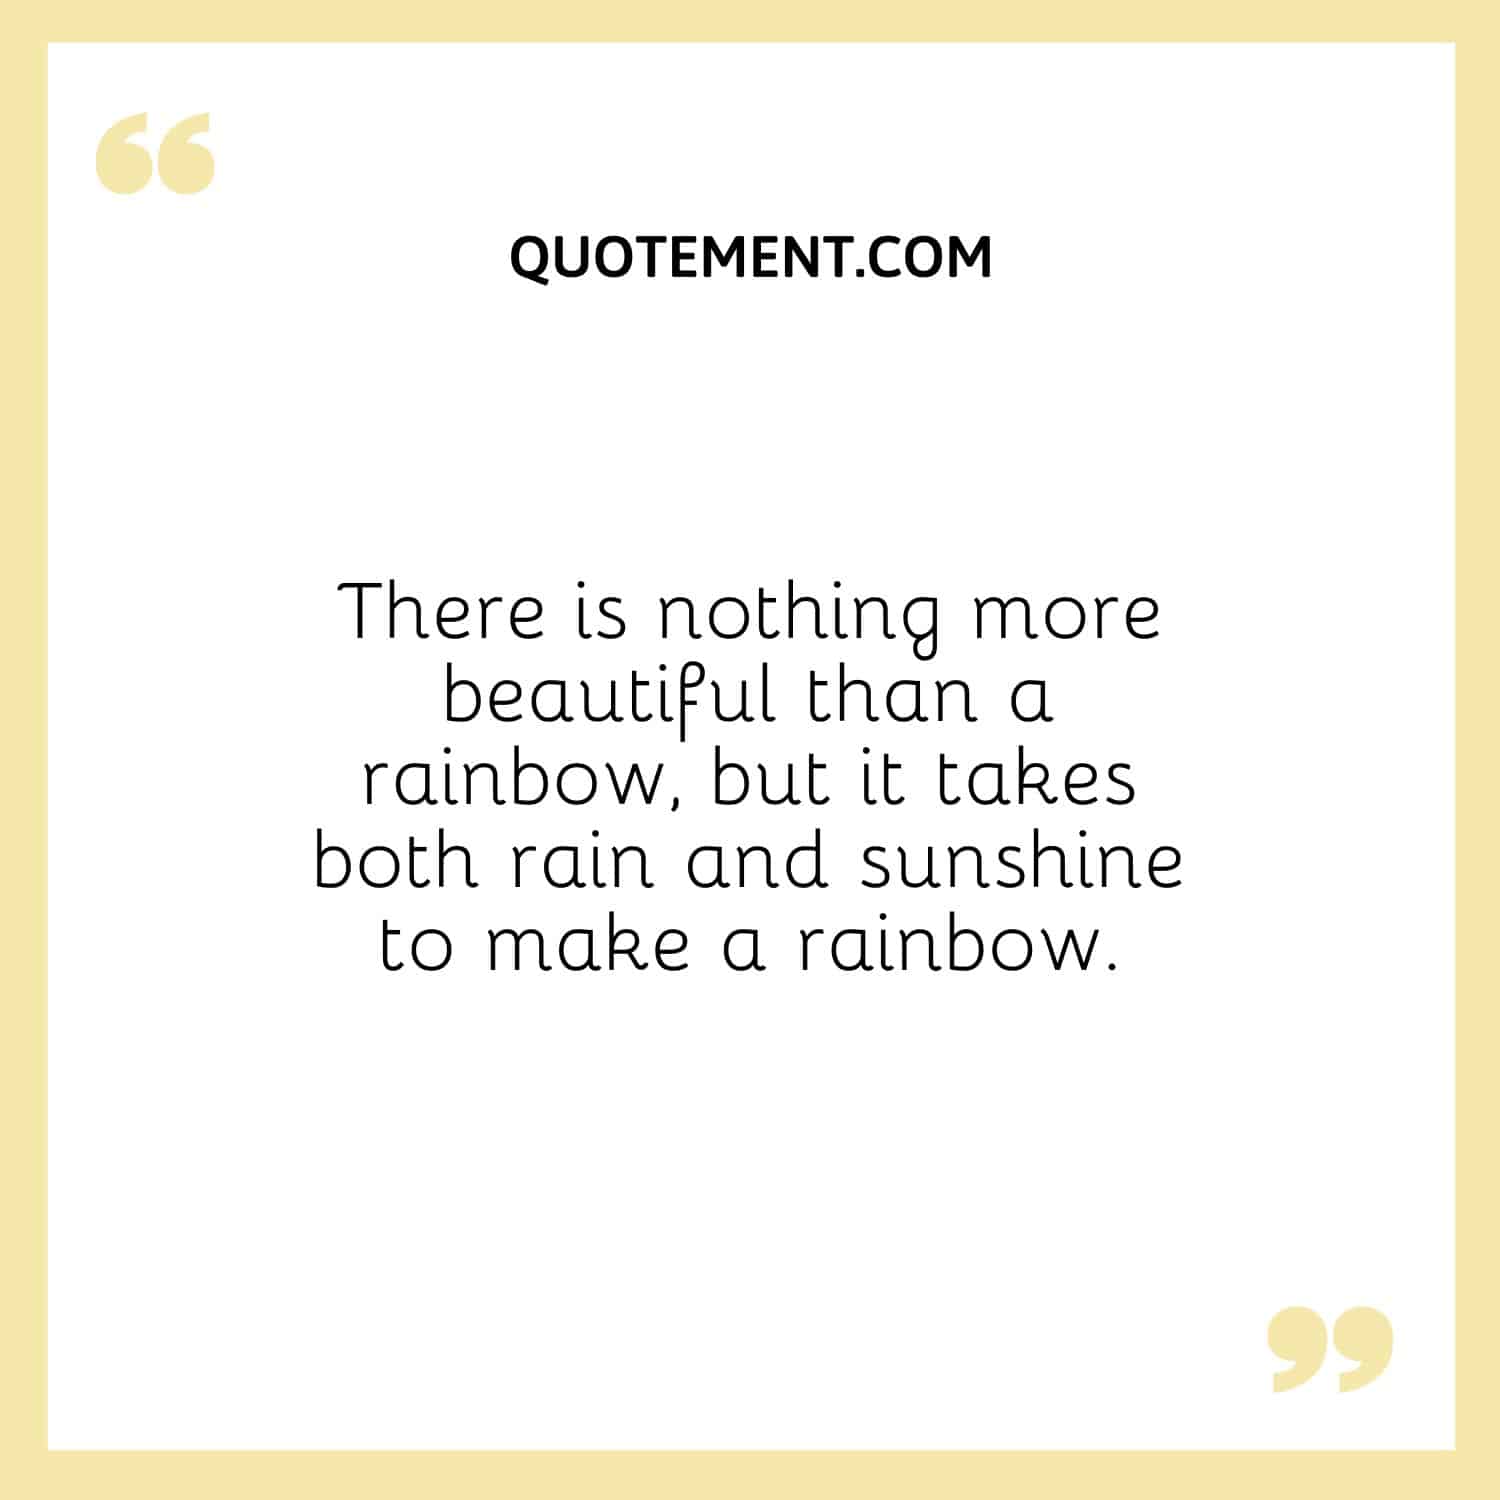 No hay nada más hermoso que un arco iris, pero para que se forme hacen falta la lluvia y el sol.